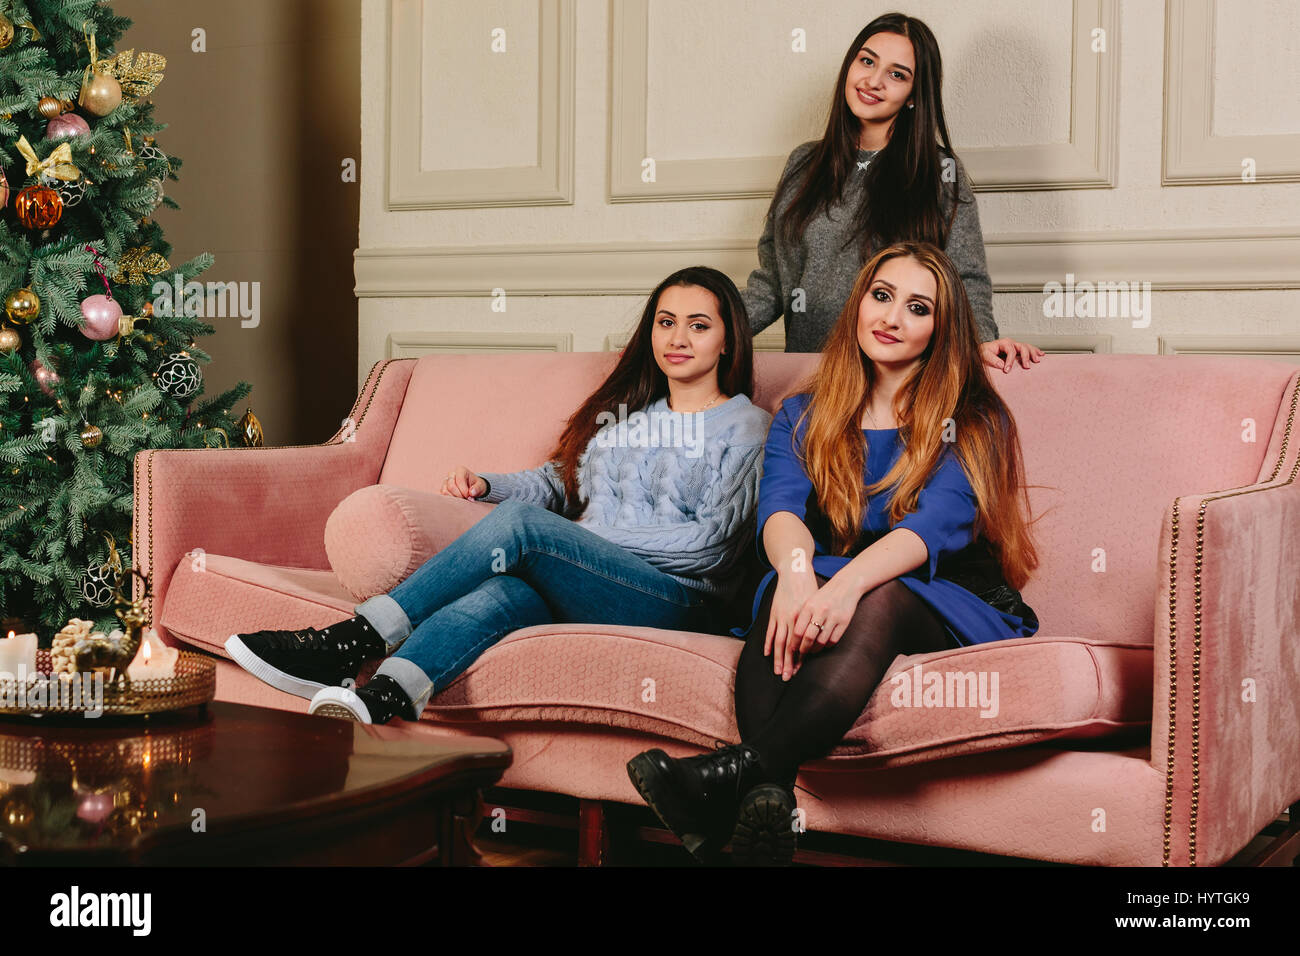 Trois belles jeunes copines sur un canapé près de l'arbre de Noël. Studio portrait horizontal. Banque D'Images